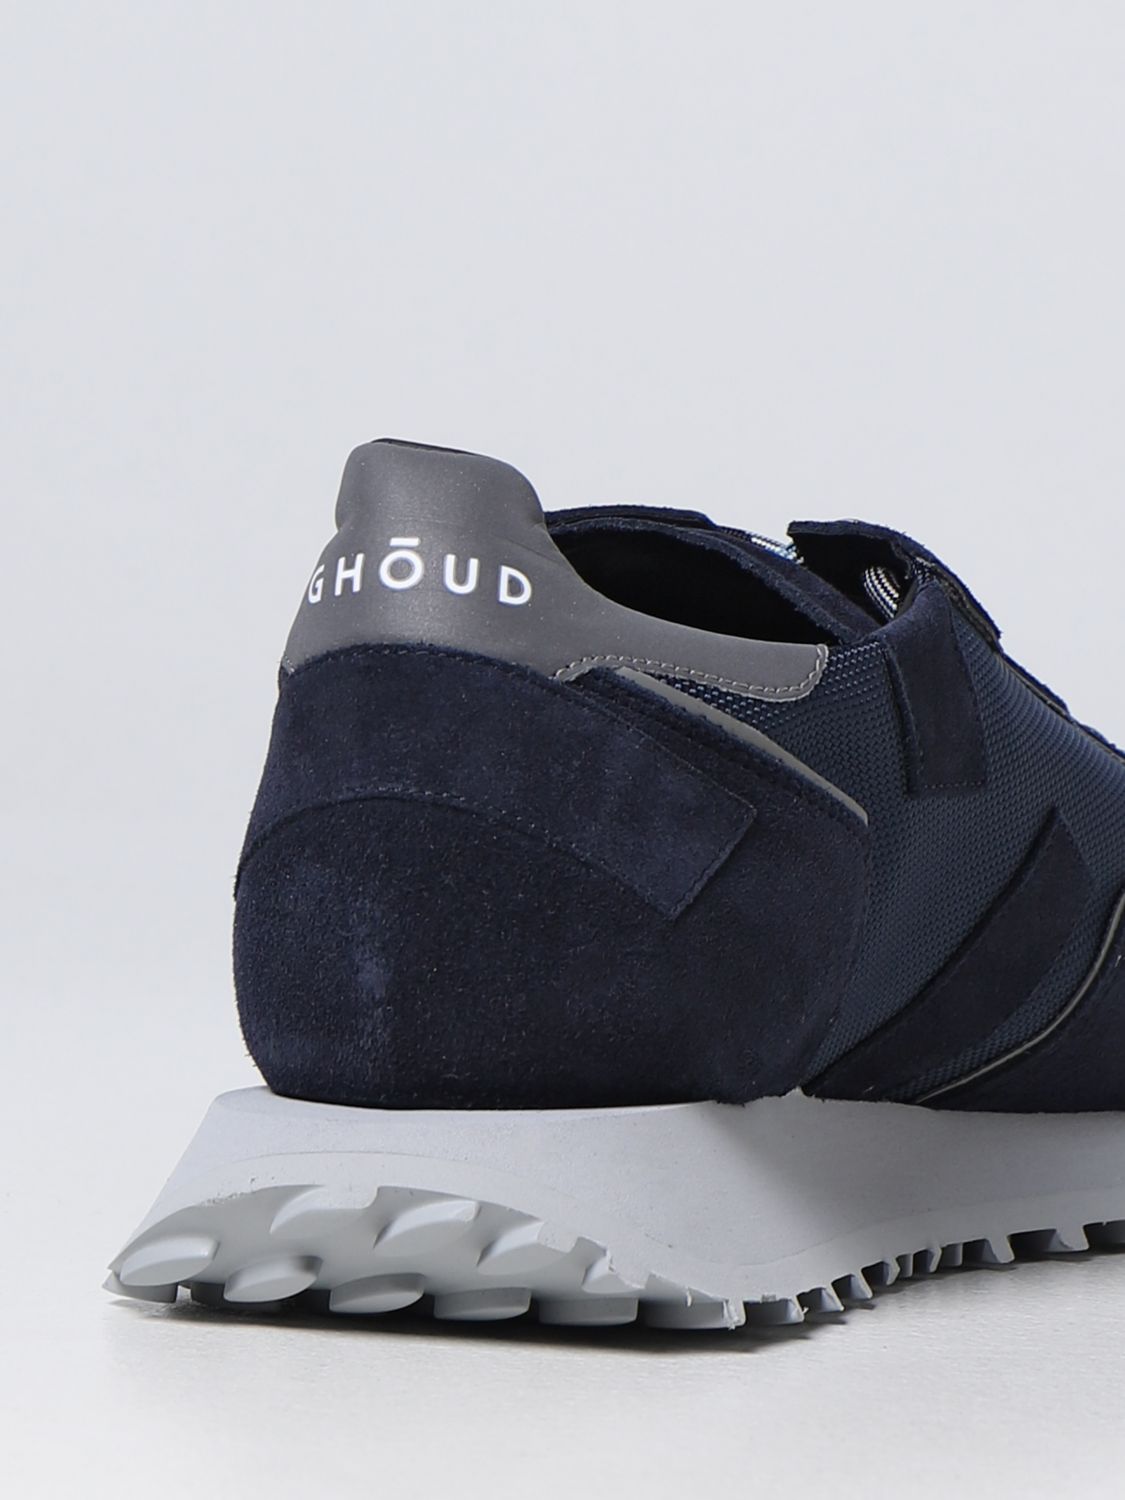 Sneakers Ghoud: Sneakers Rush One Ghoud in suede e mesh blue 3